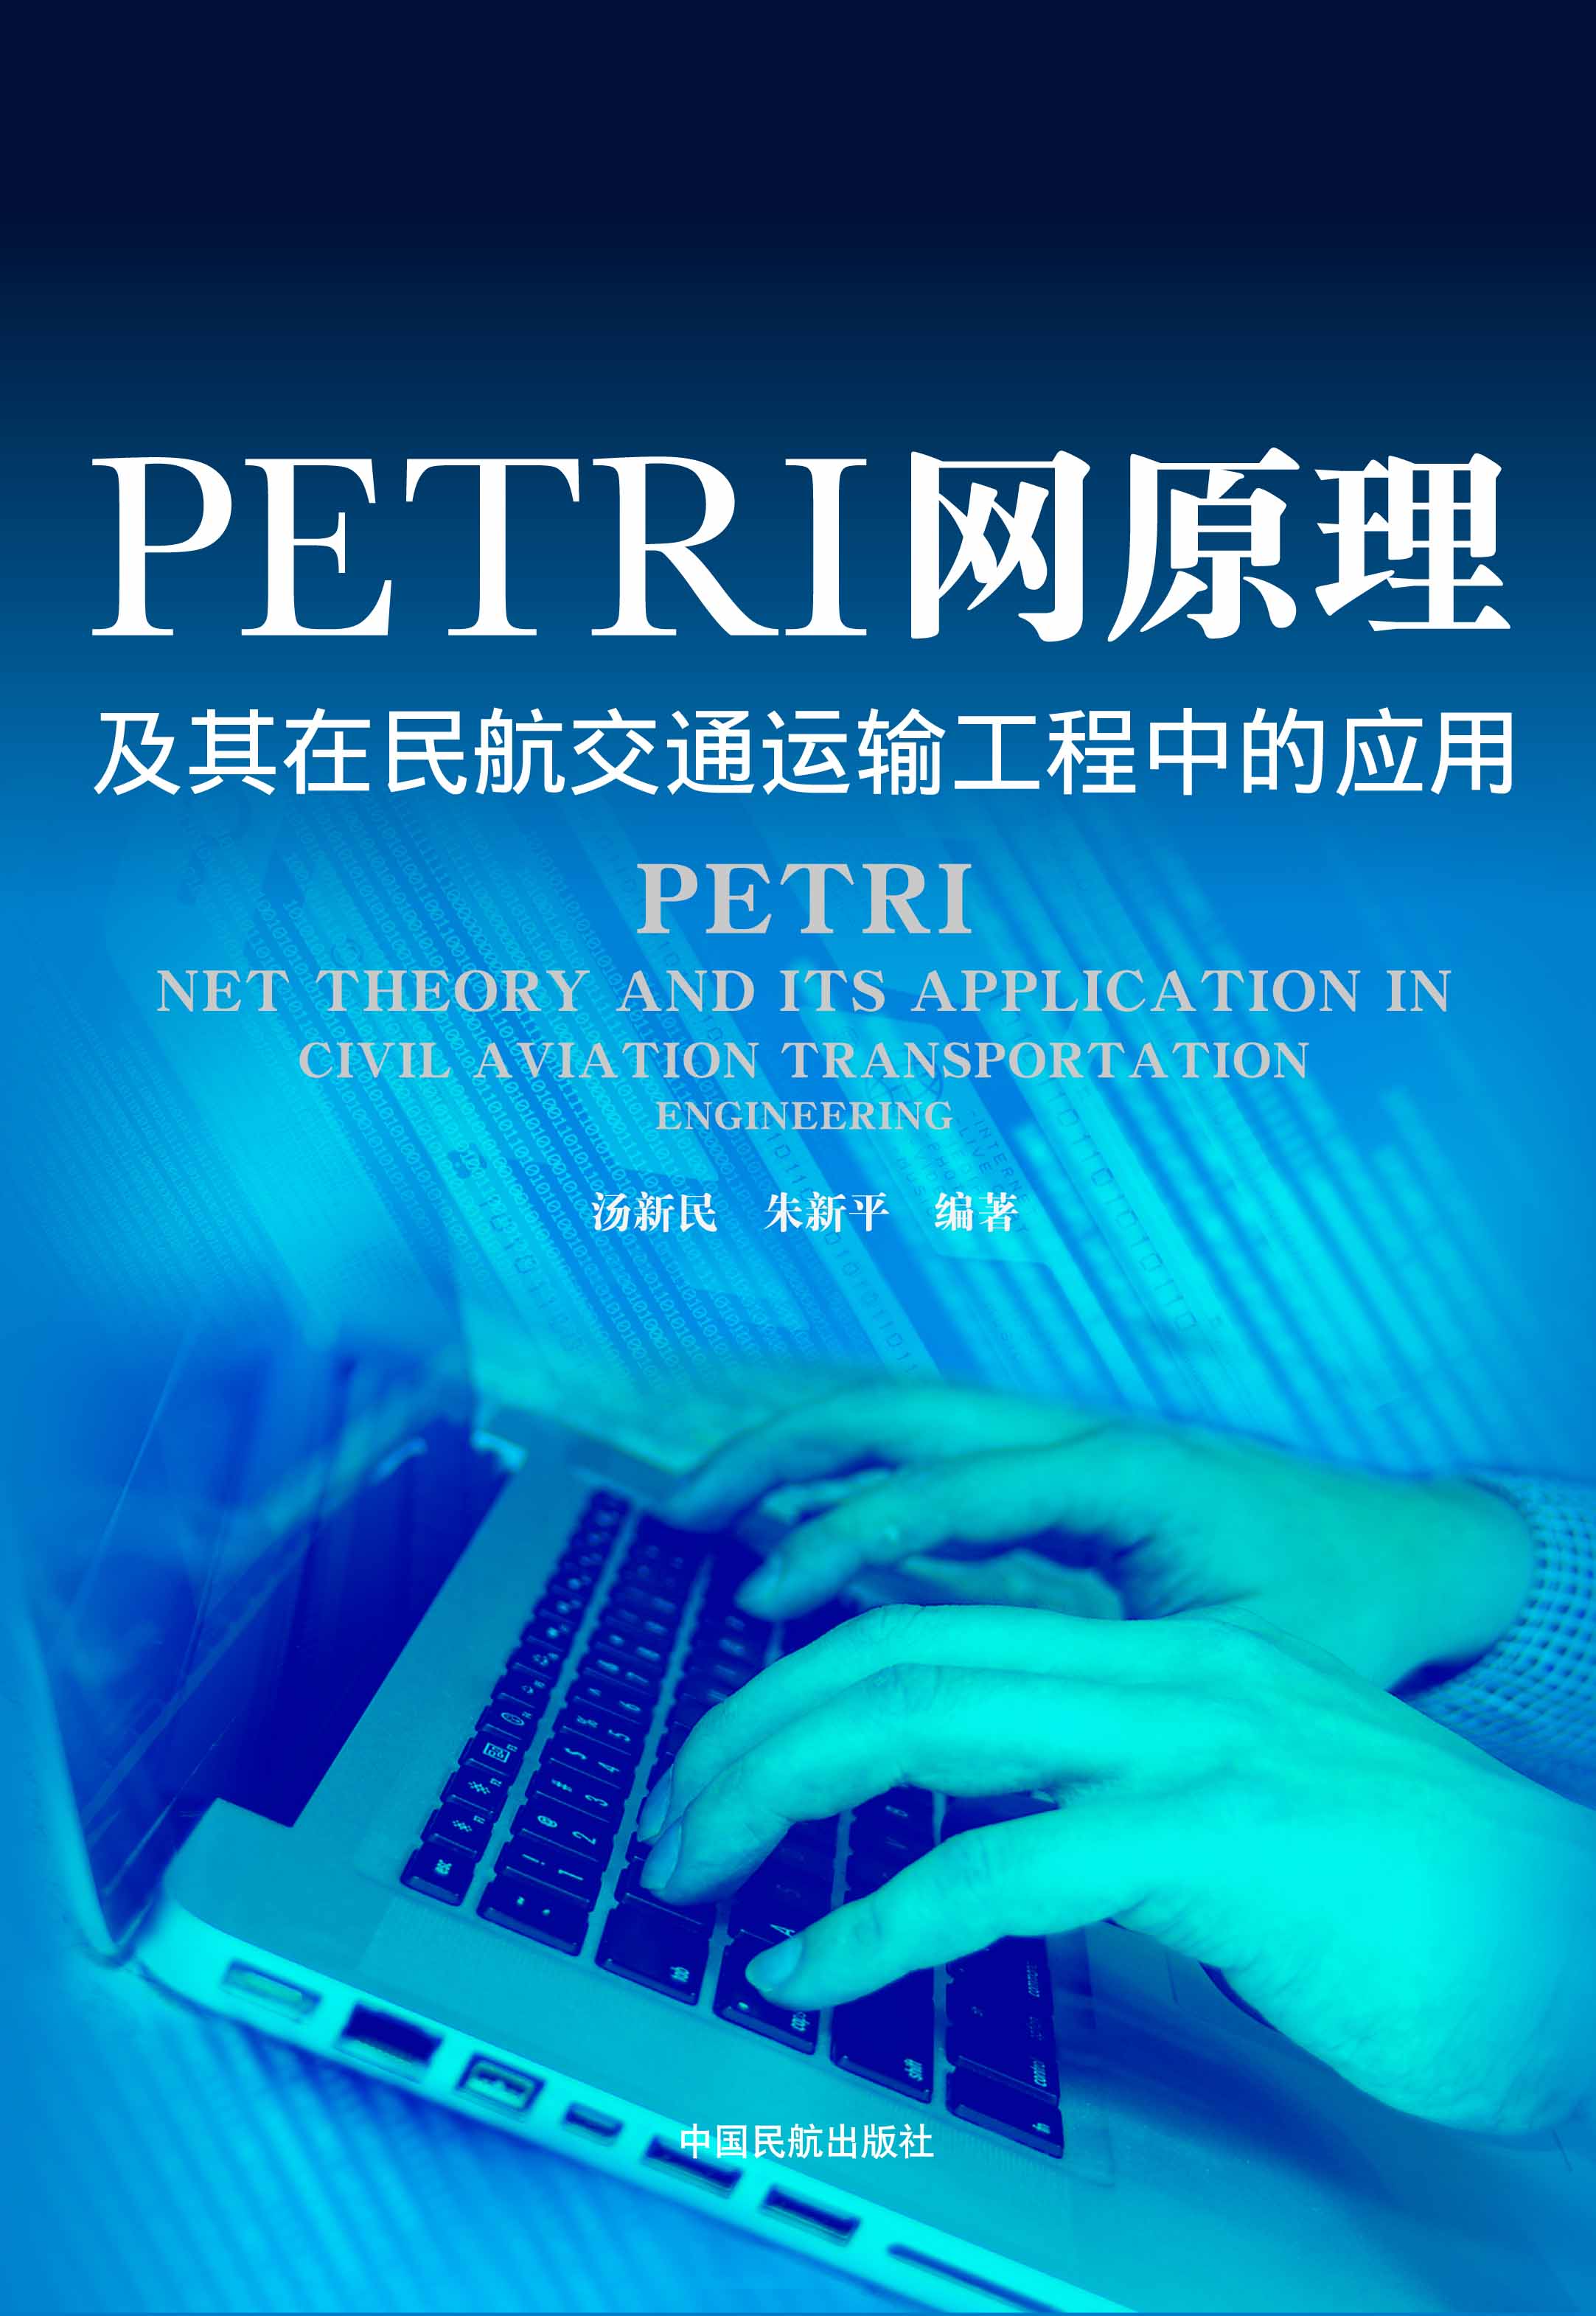 PETRI網原理及其在民航交通運輸工程中的套用